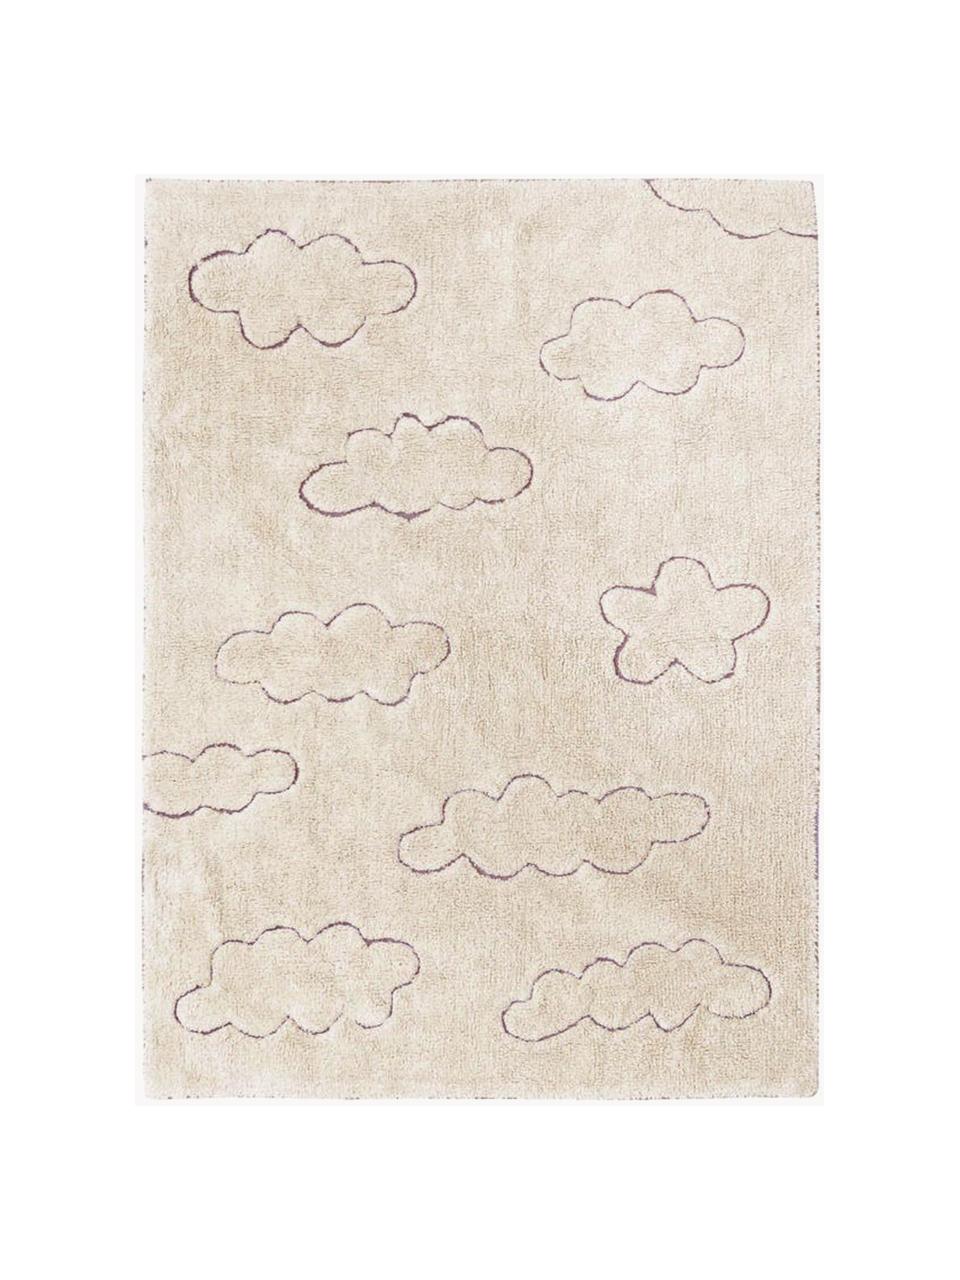 Tappeto per bambini tessuto a mano con motivo in rilievo Clouds, lavabile, Retro: 100% poliestere, Beige chiaro, Larg. 90 x Lung. 130 cm (taglia XS)